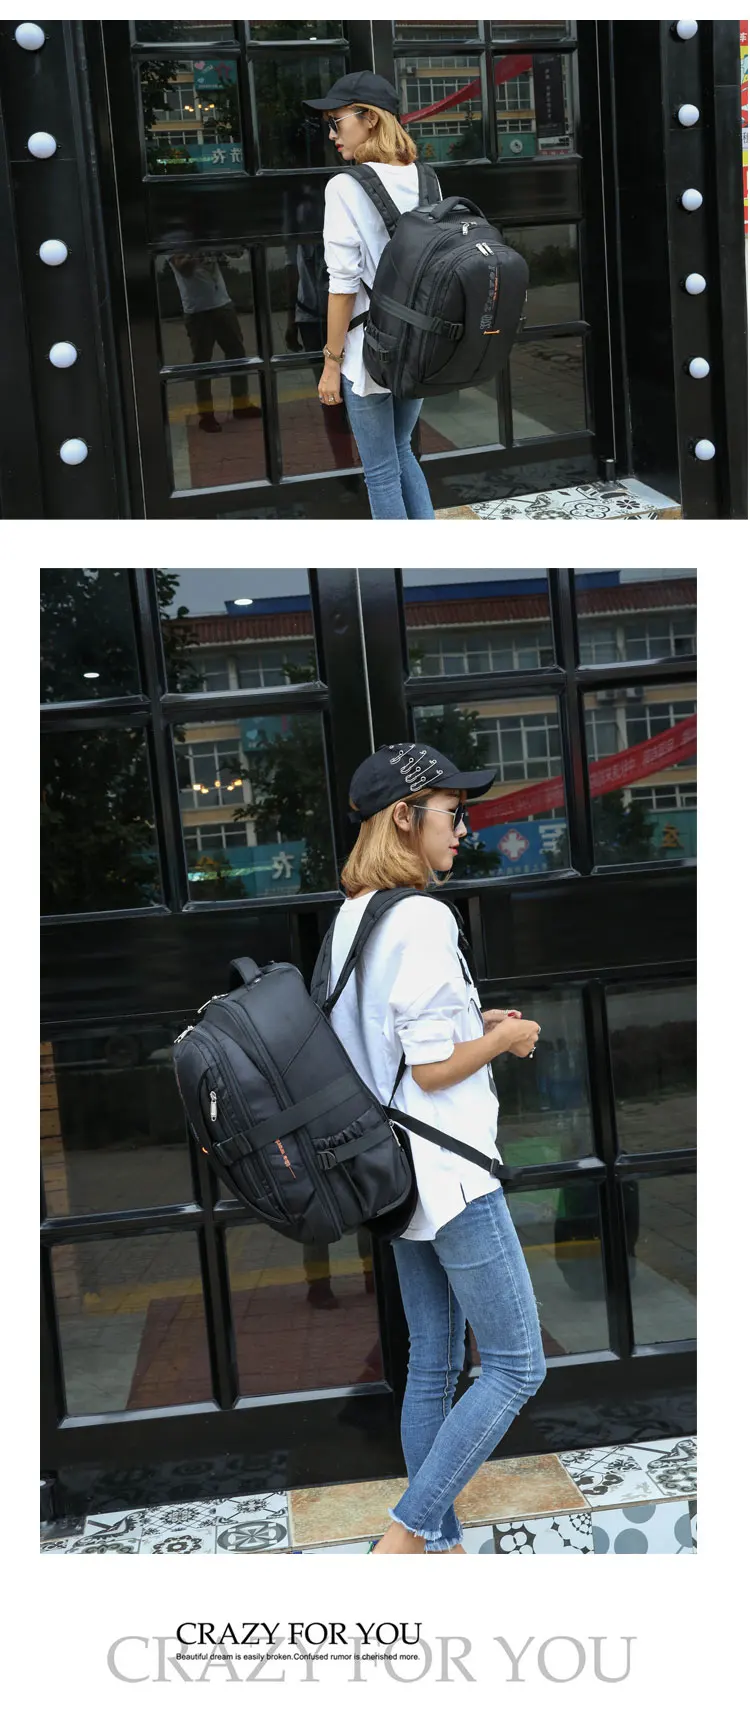 Вэньцзе брат новый большой ёмкость rollingBackpack сумка бизнес для мужчин и женщин интернат водоотталкивающая сумка тележки для багажа сумки